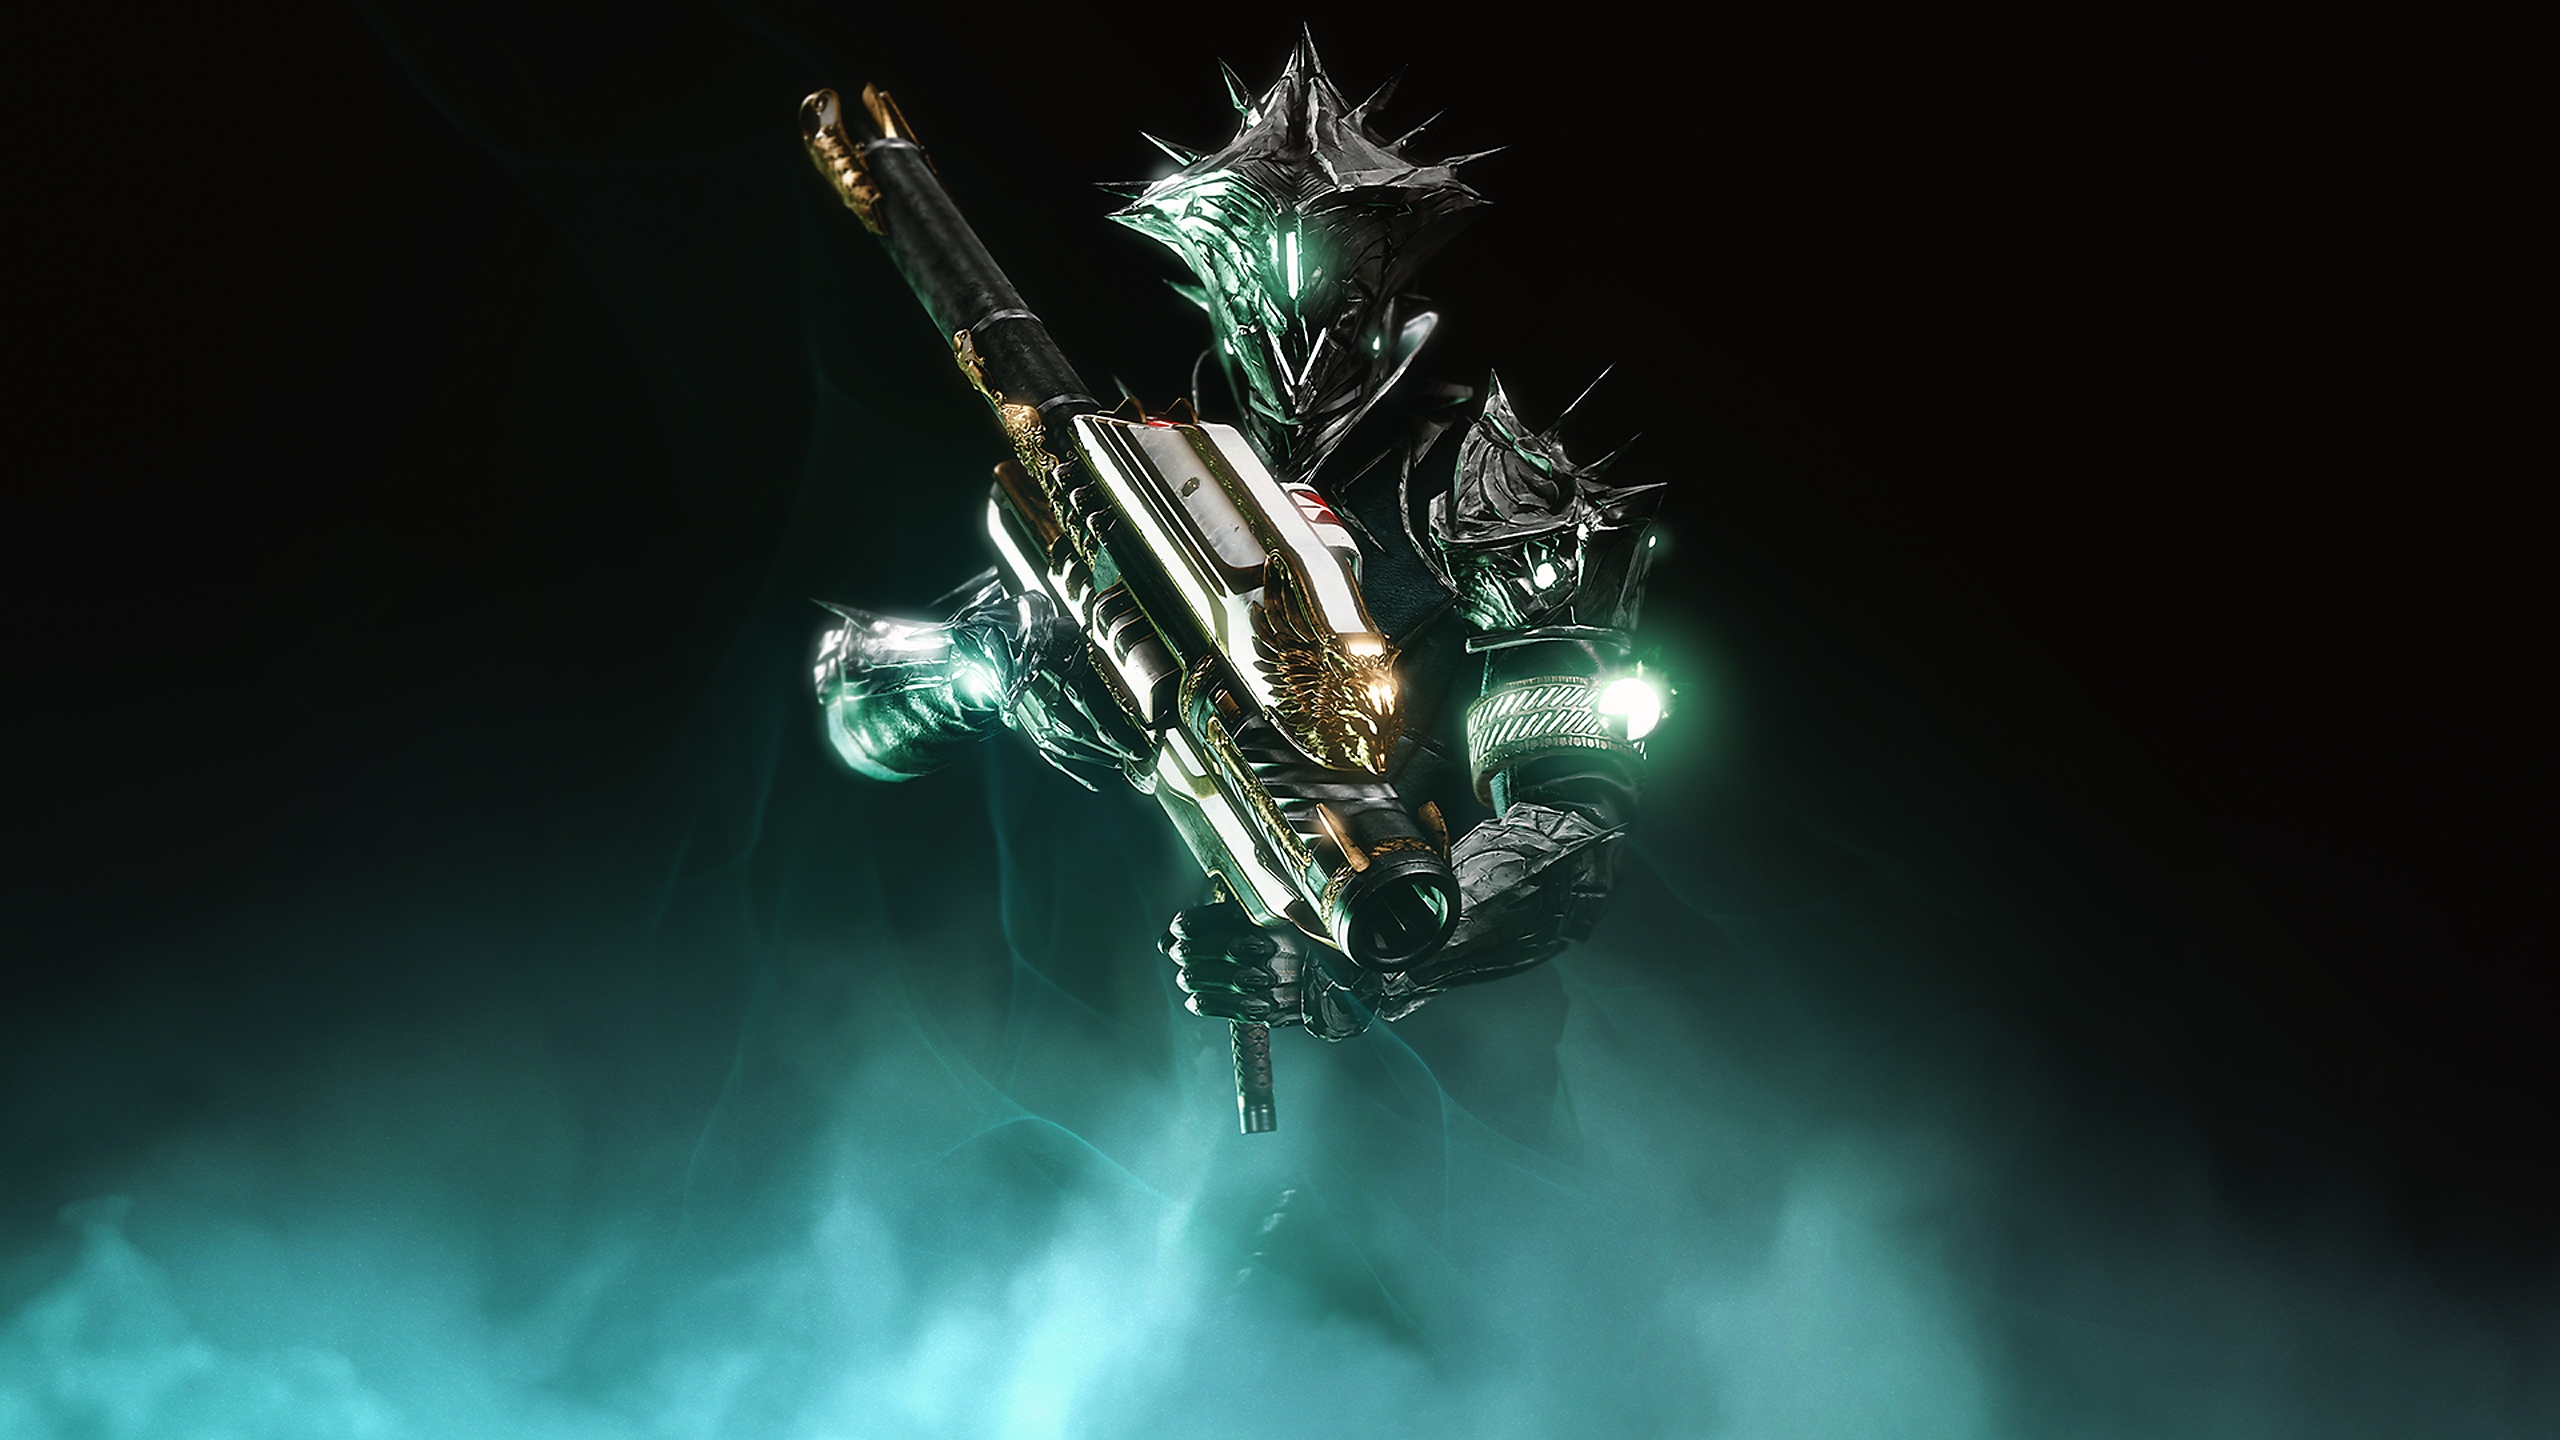 Destiny 2 - Fondo del paquete aniversario nro. 30 que muestra un guardián empuñando un lanzacohetes exótico Gjallarhorn